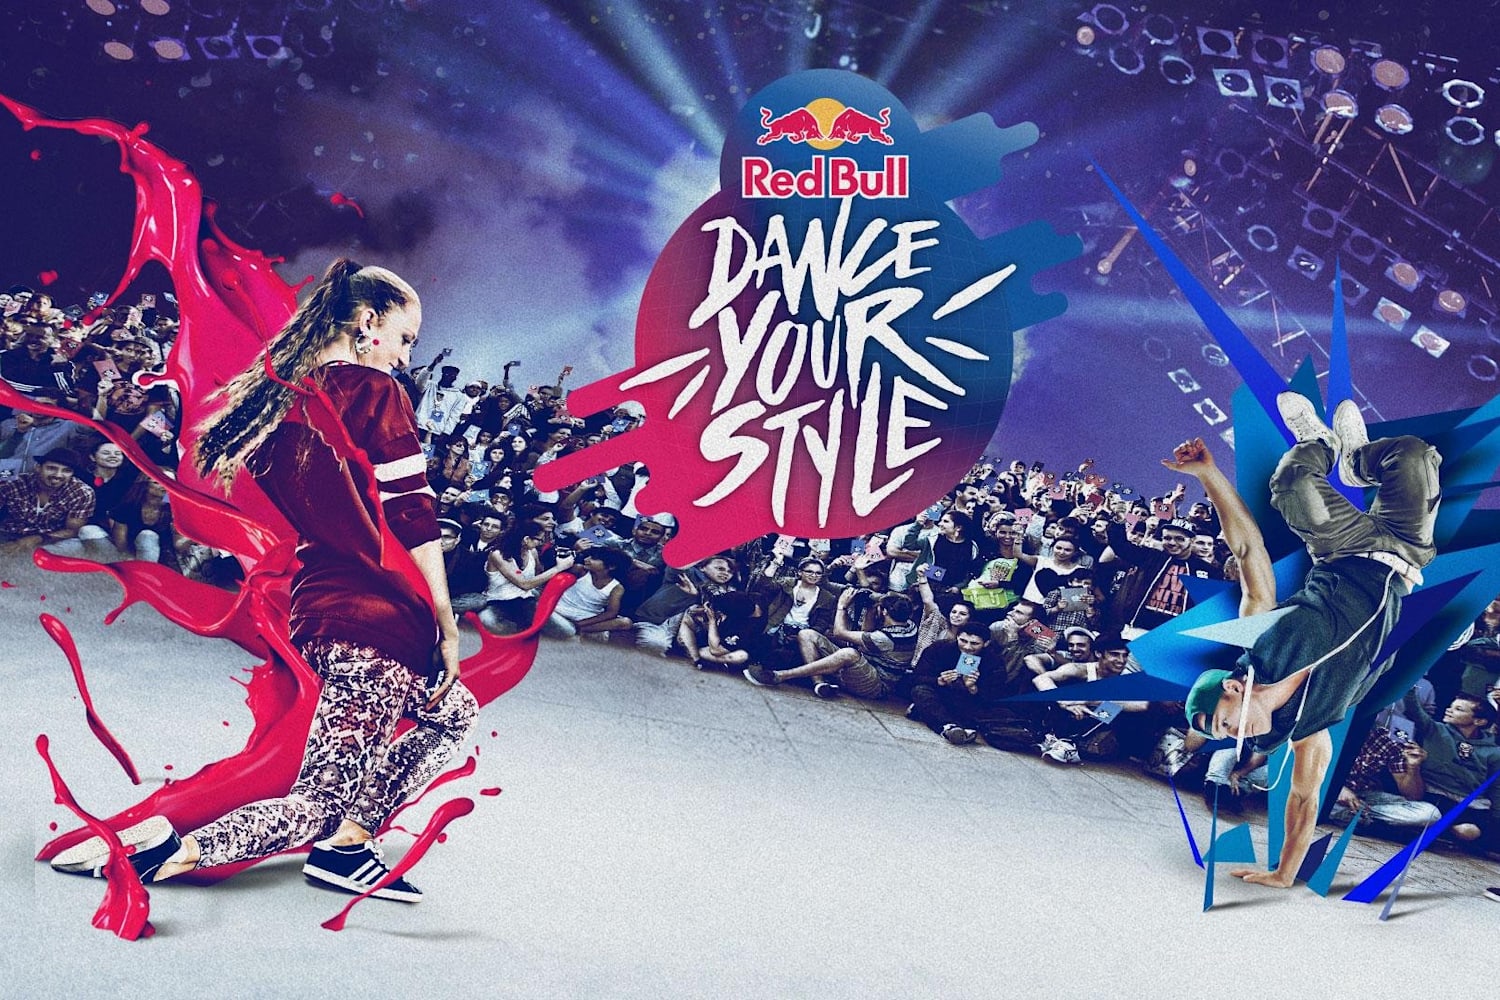 Red Bull Dance Your Style débarque en France ! Danse